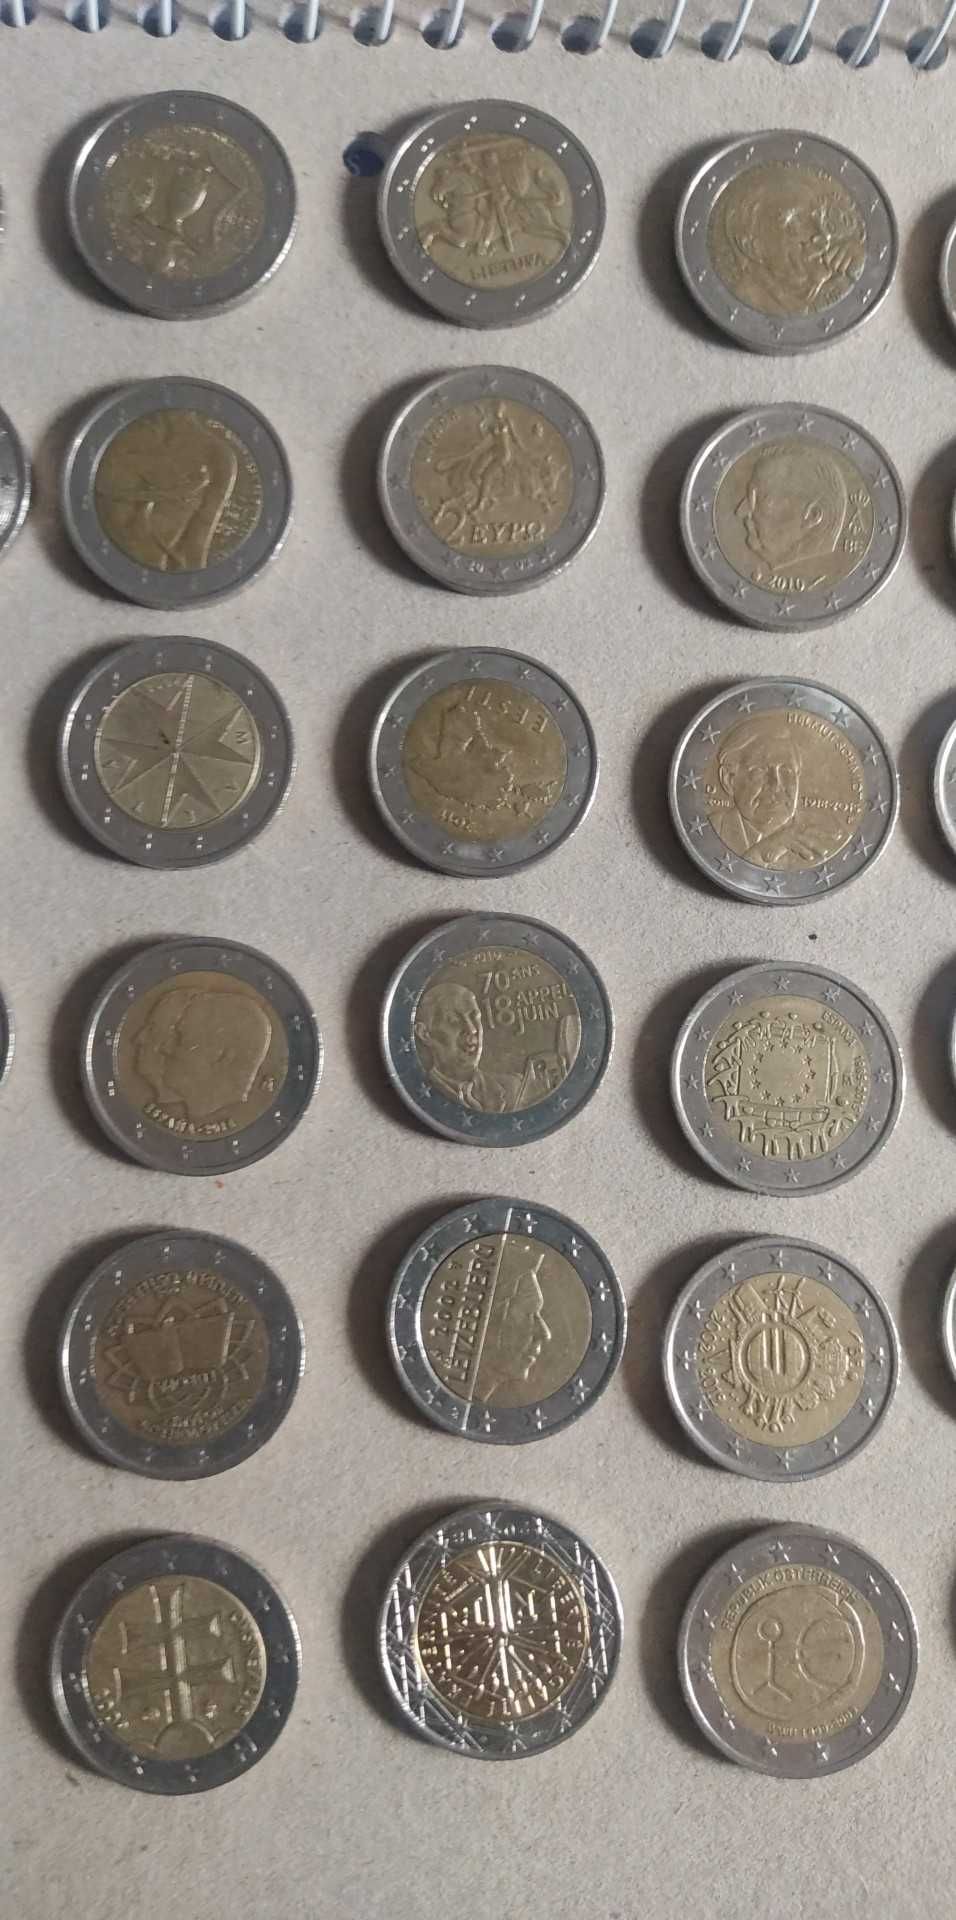 Moedas de dois euros todas diferentes